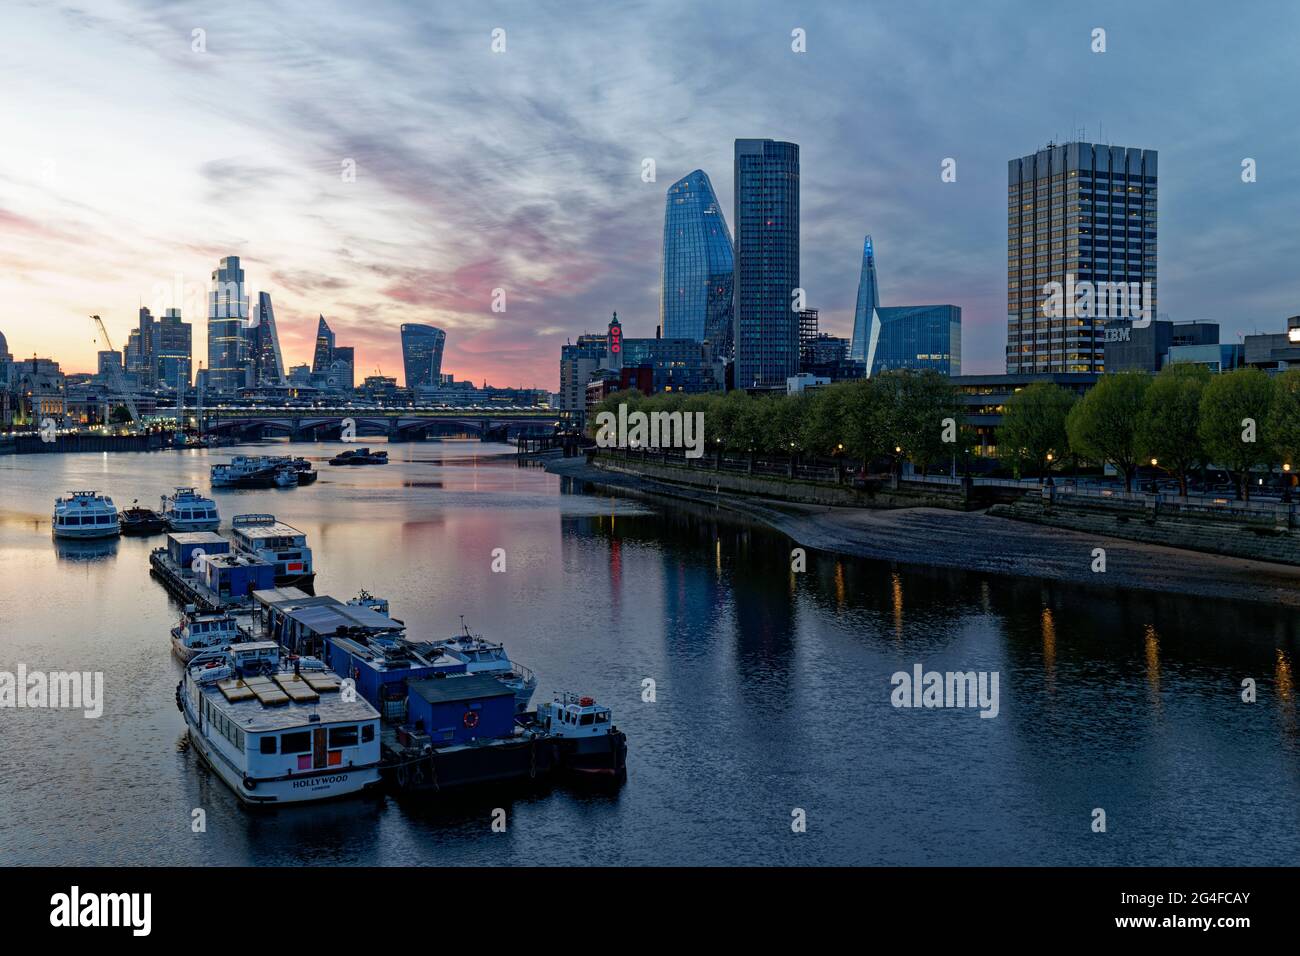 La luce dell'alba sul Tamigi a Londra, in Inghilterra, rivela il centro finanziario della città e i molti nuovi edifici di alto livello Foto Stock